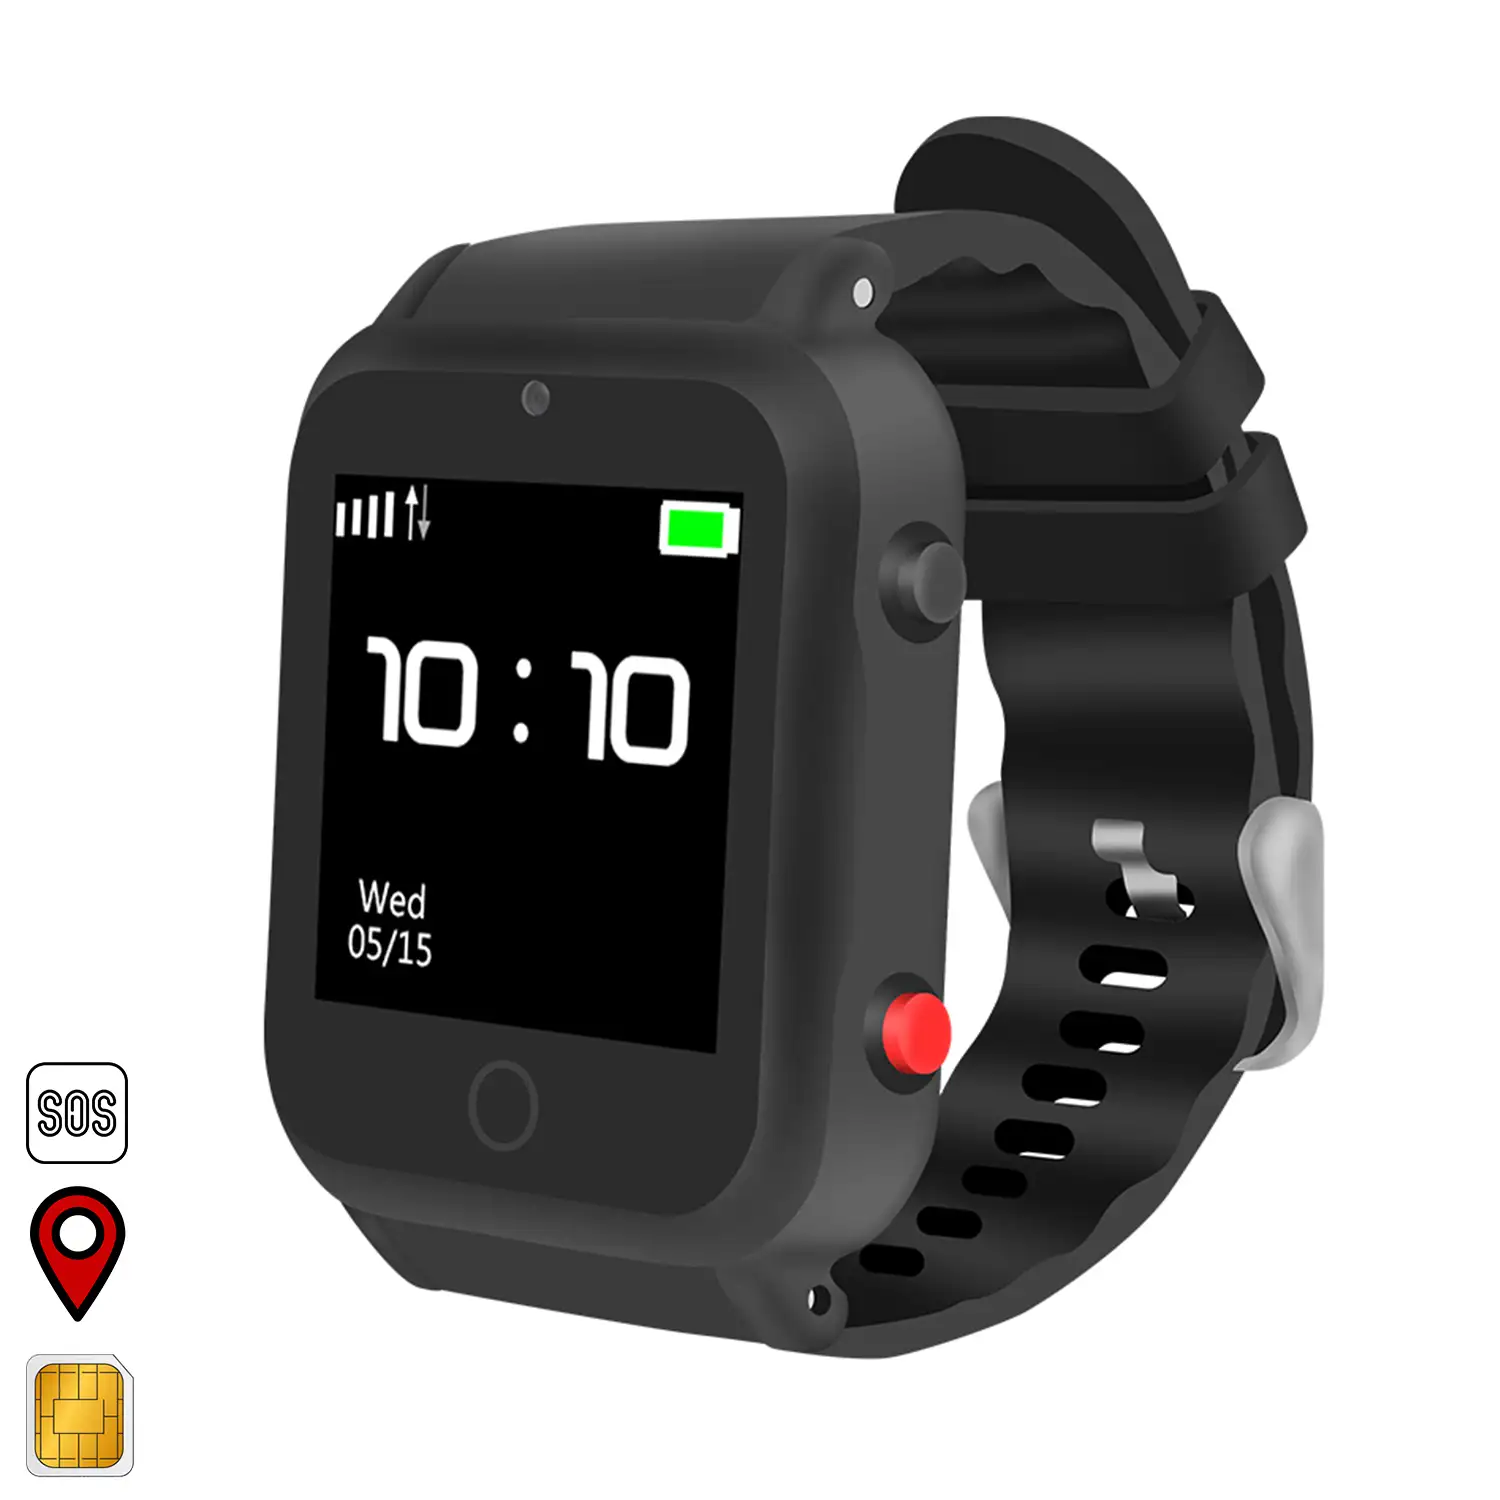 Smartwatch S88 localizador GPS, AGPS y LBS. Especial personas mayores. Con botón SOS.